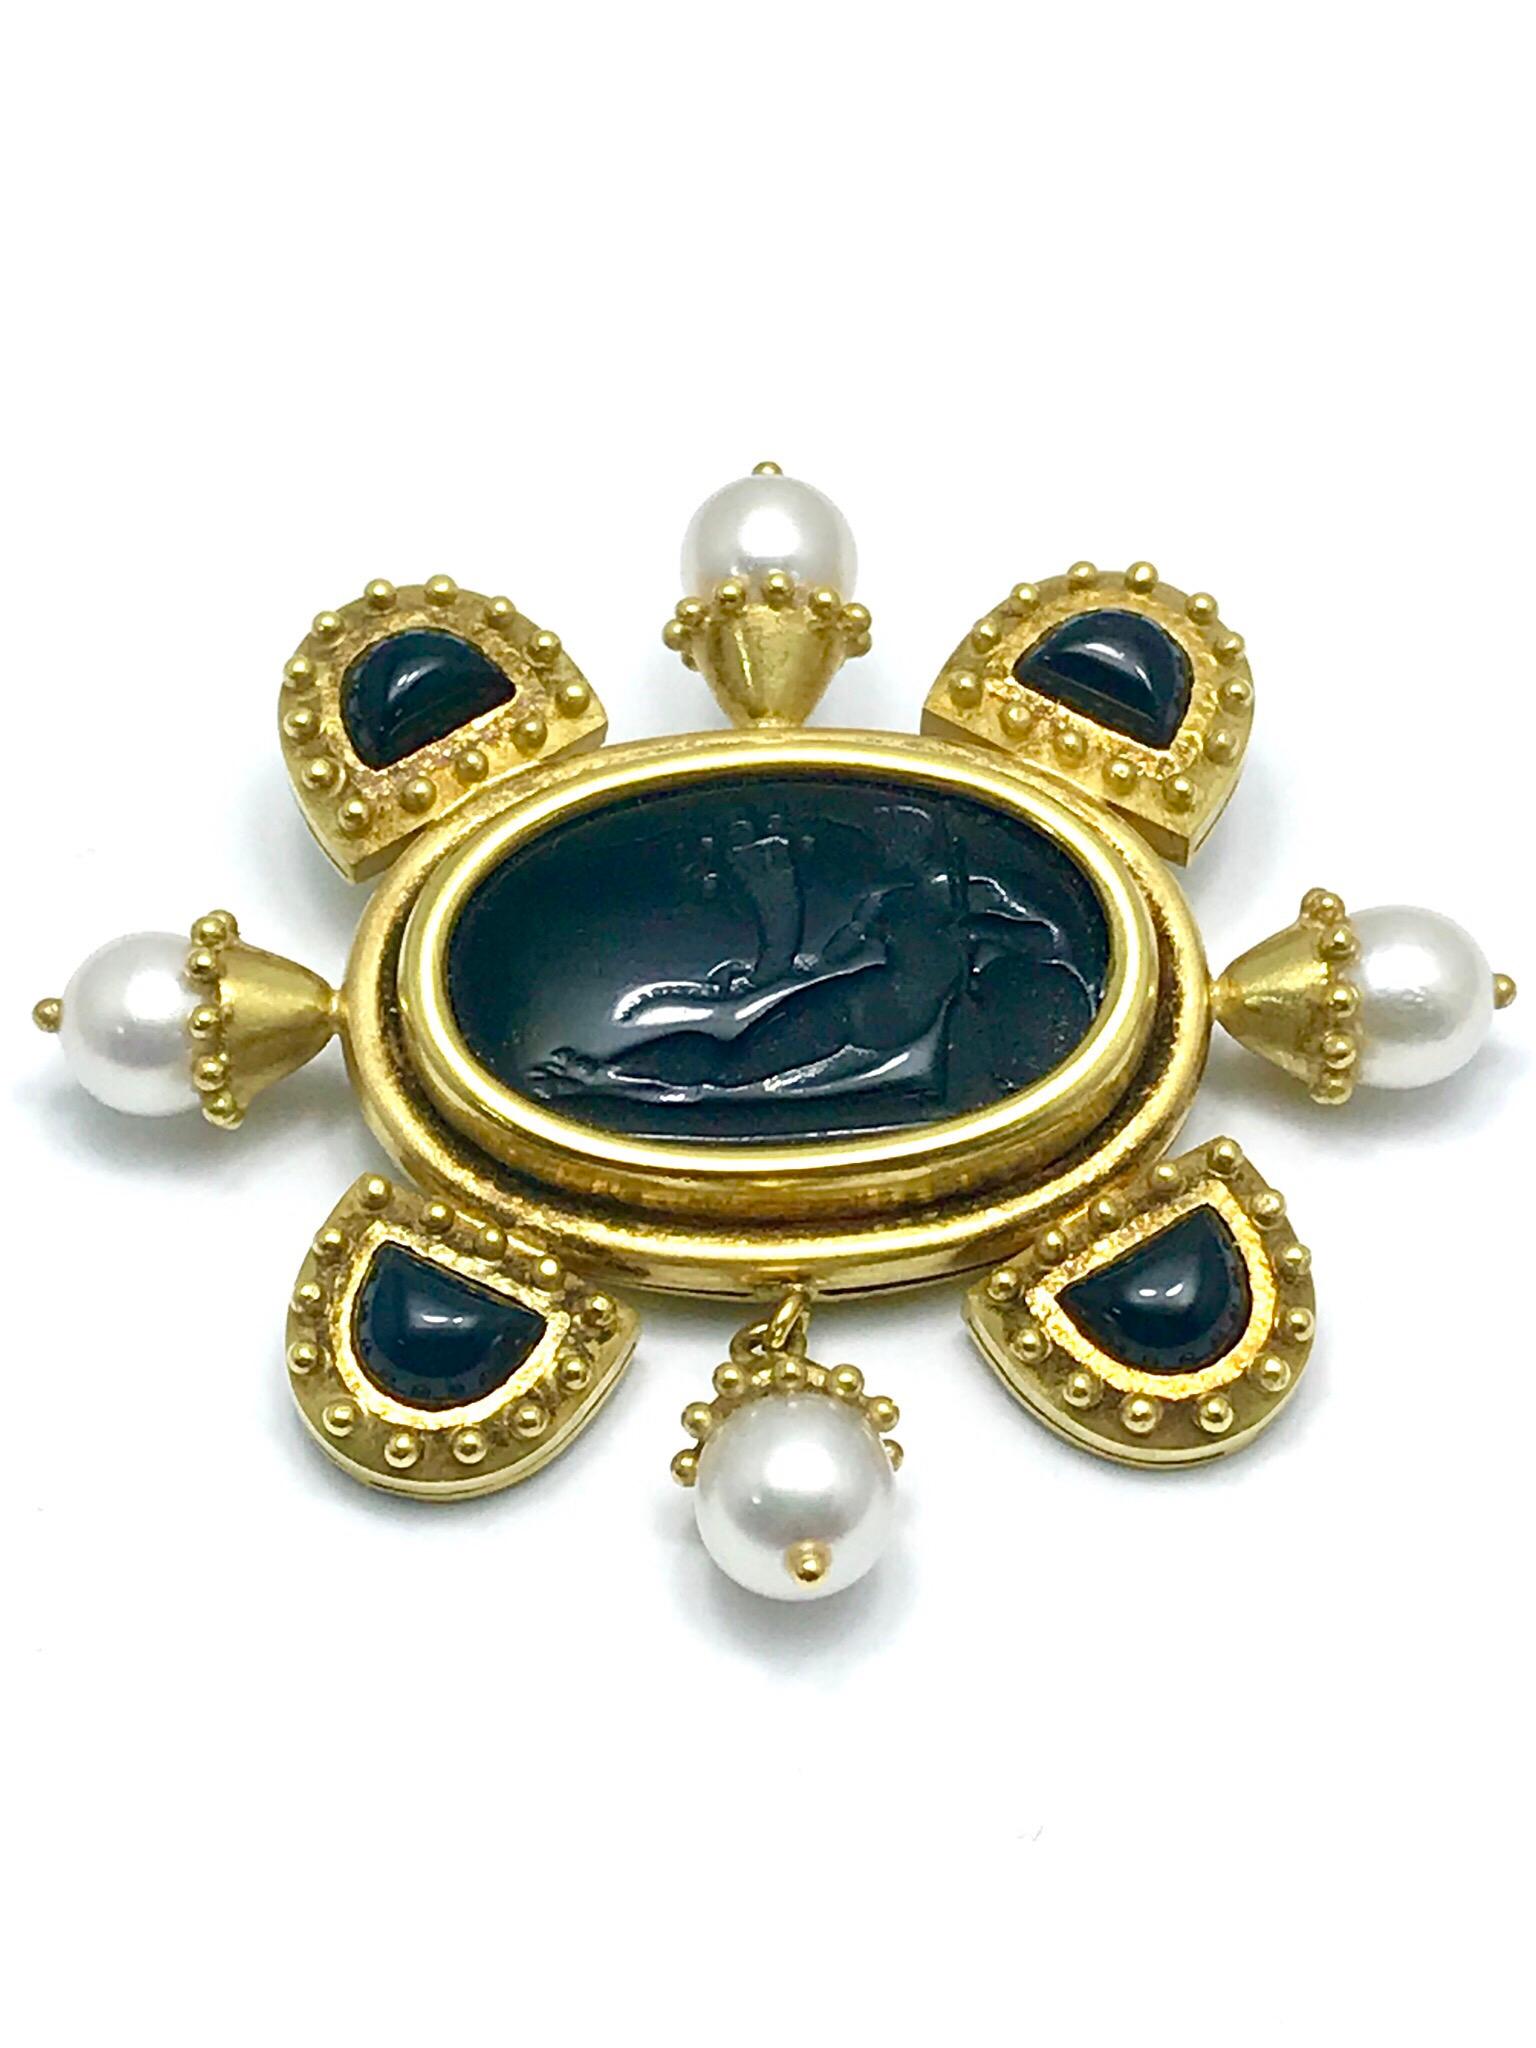 Modern Elizabeth Locke Onyx Intaglio and Cultured Pearl Gold Brooch